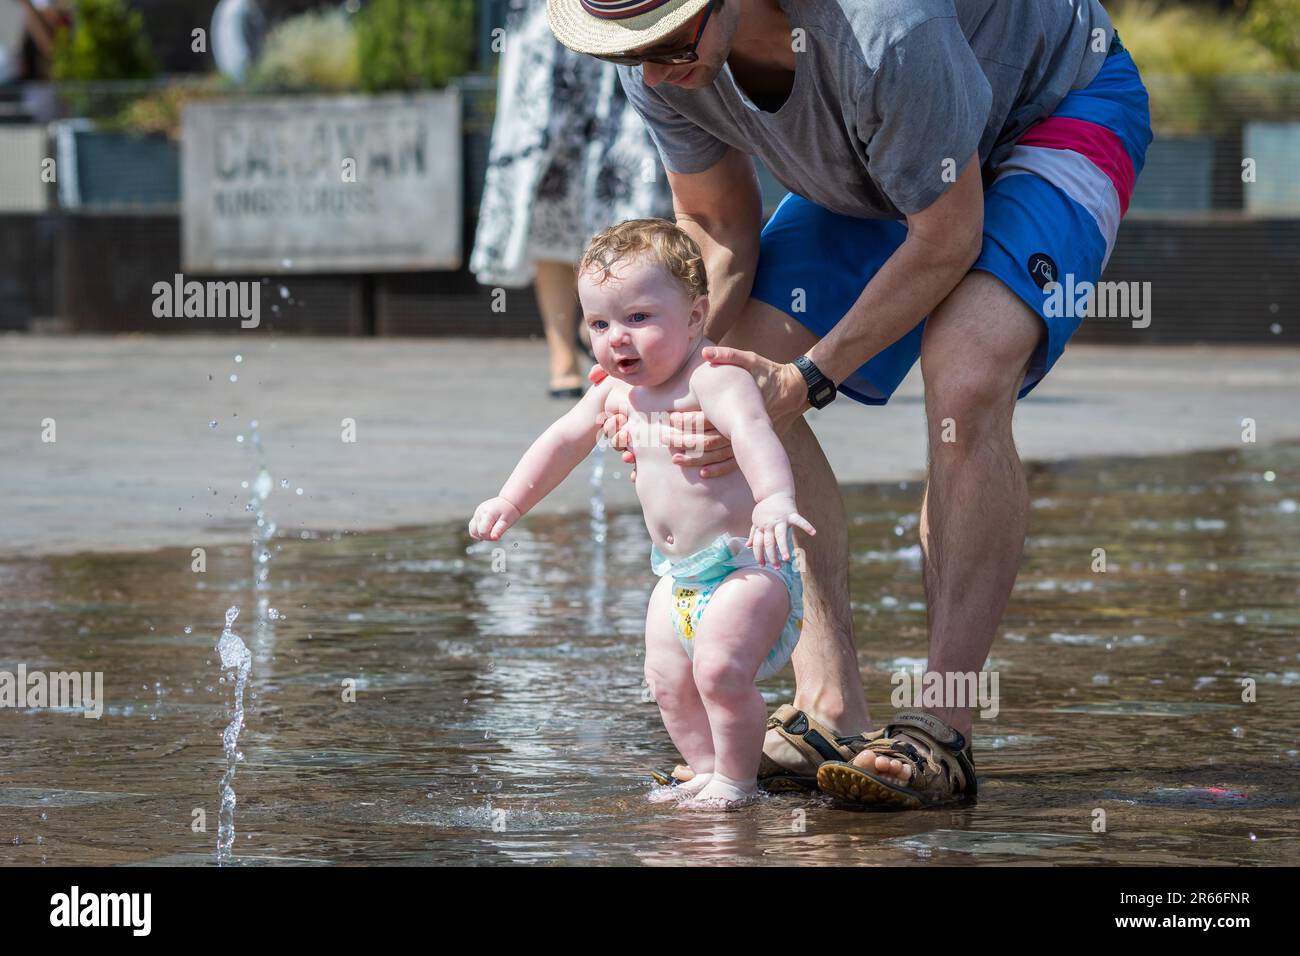 Londres, Royaume-Uni - 21 juin 2023 - vague de chaleur à Londres, père aidant son enfant à jouer avec de l'eau aux fontaines Granary Square à Kings Cross Banque D'Images